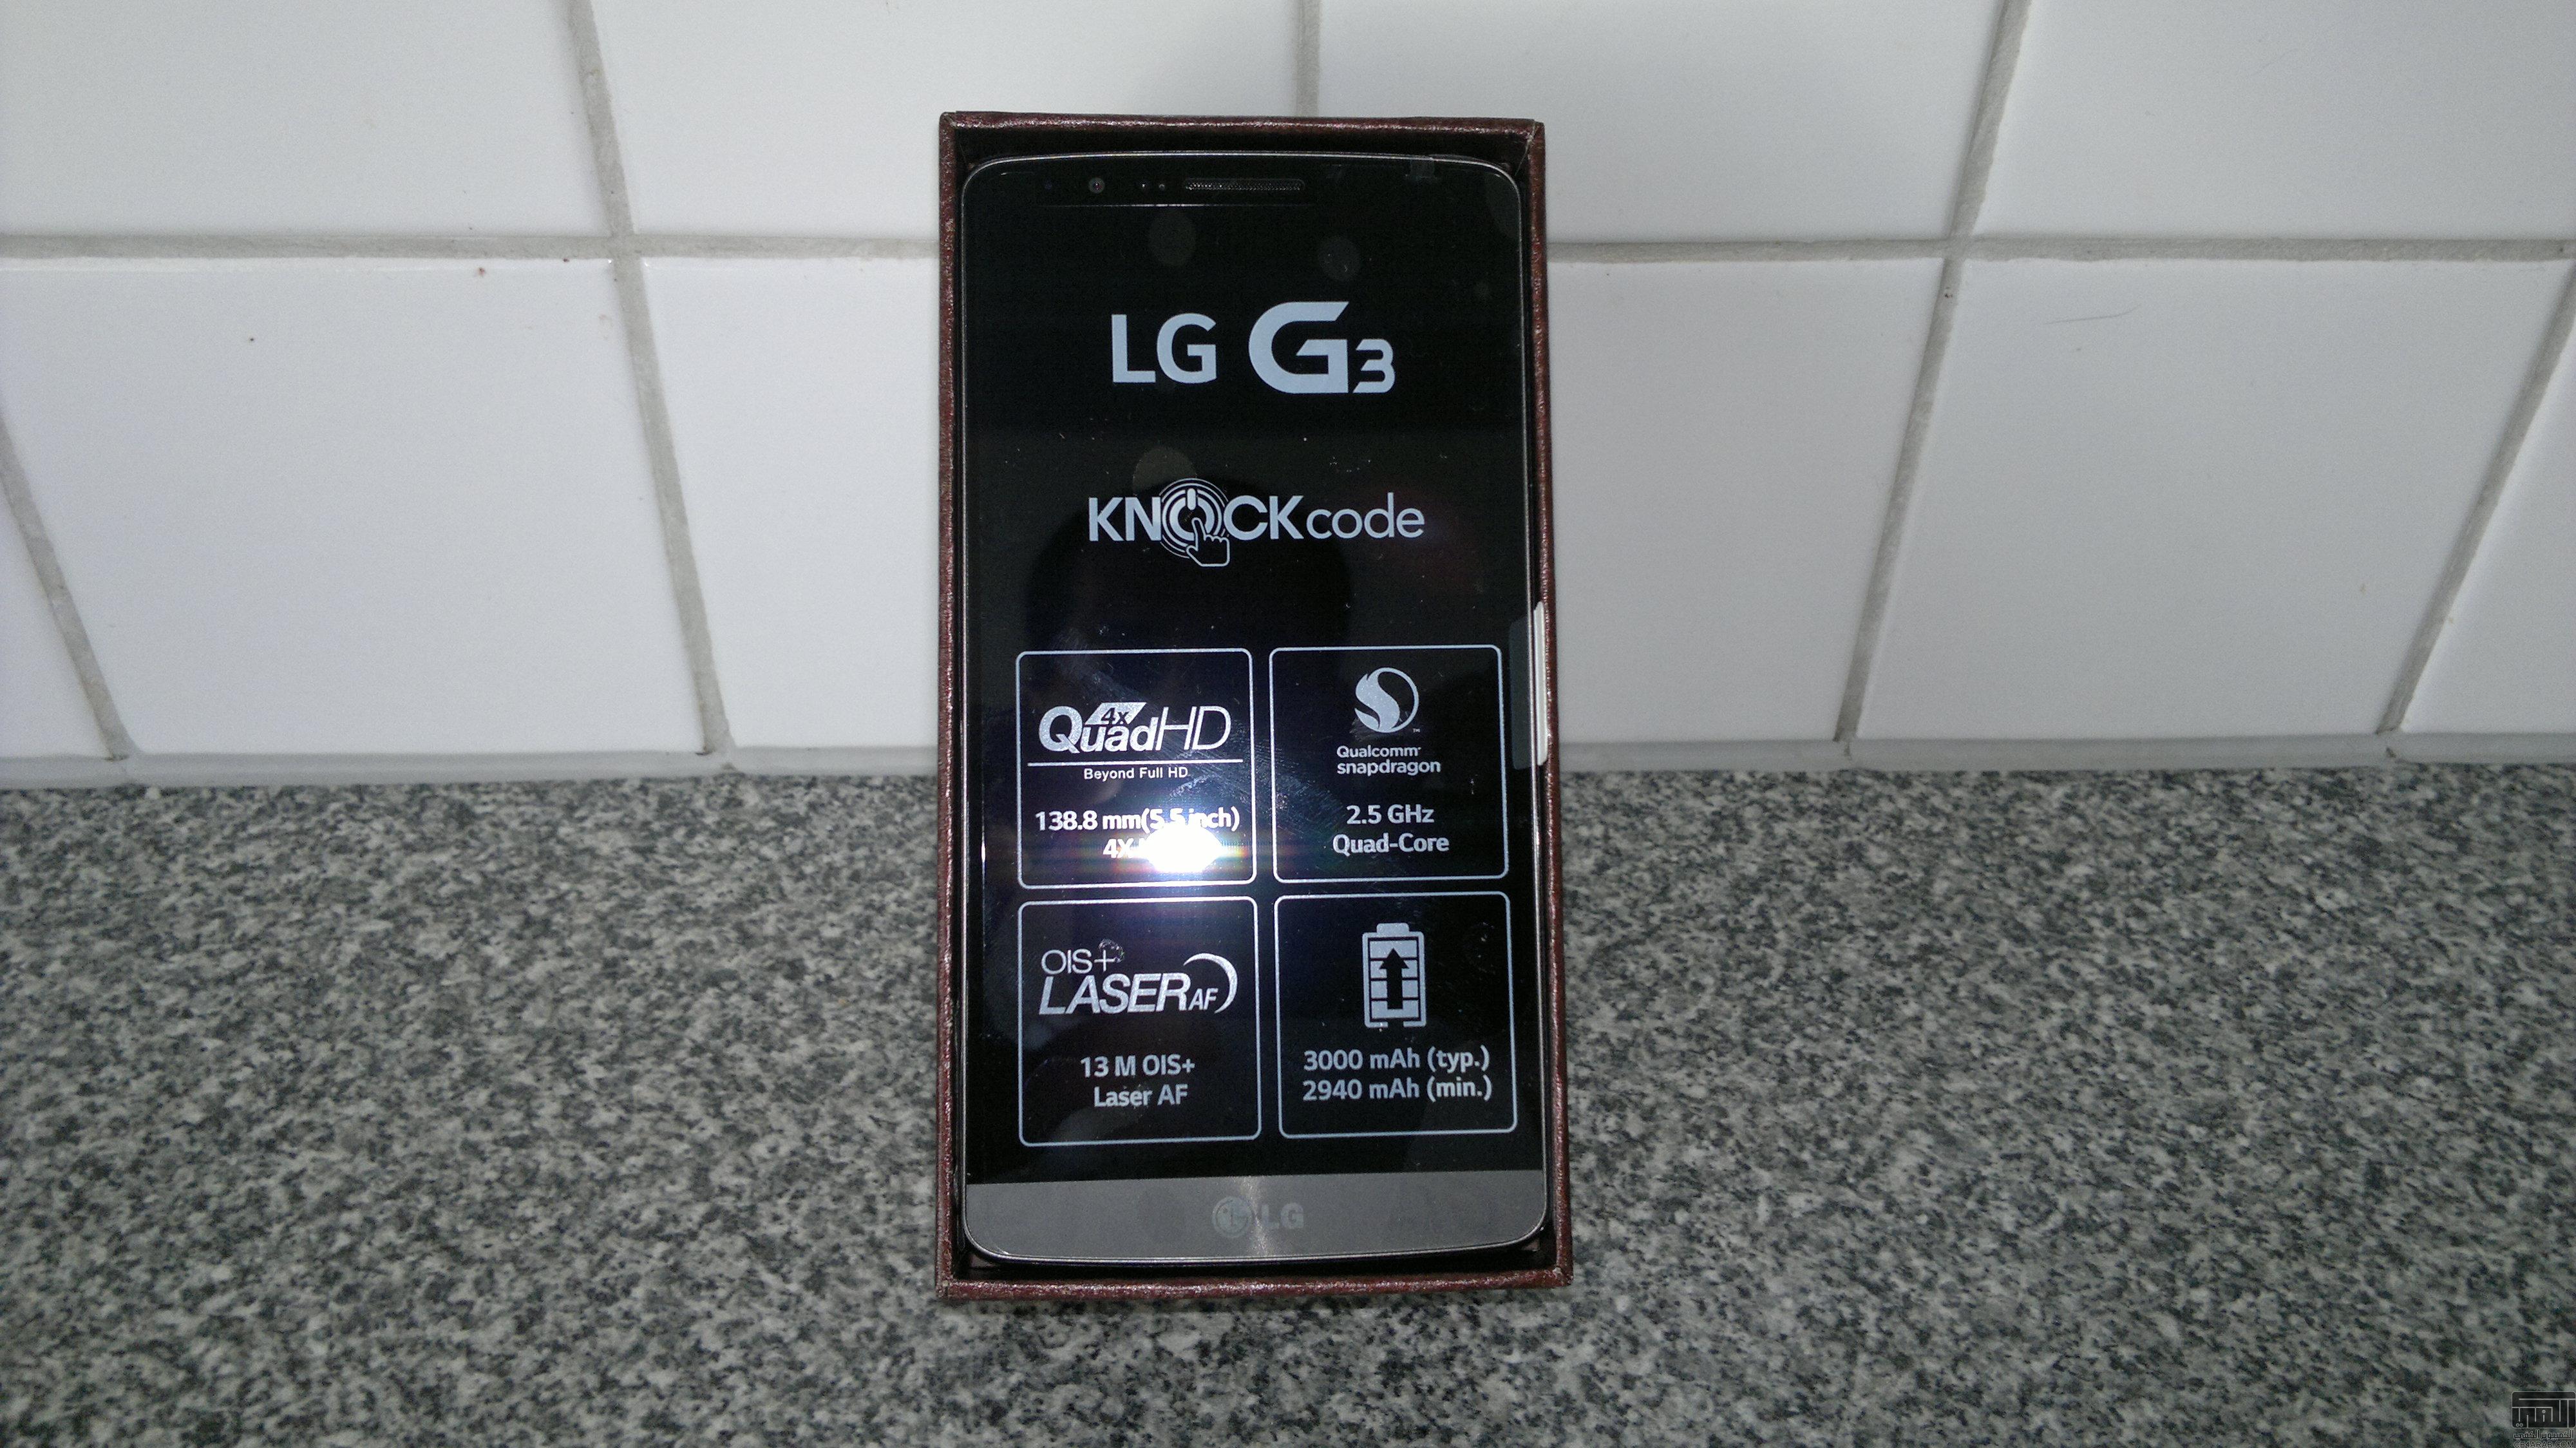 نصيحة رجاء الدخول : محتار بين LG G3 - HTC ONE M8 - SONY XPERIA Z2